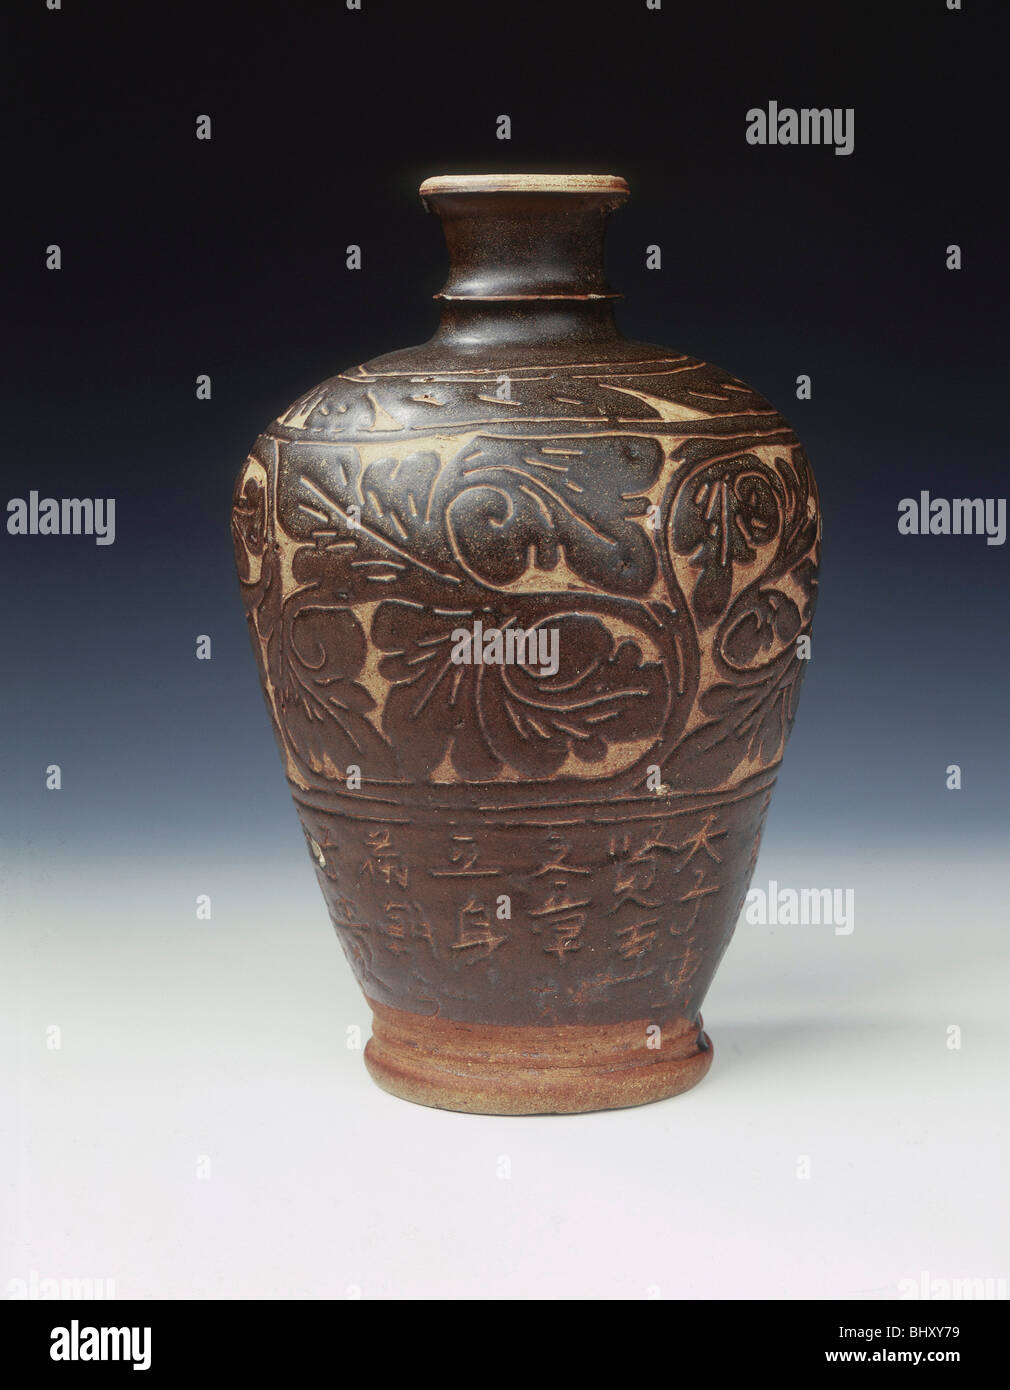 Vase meiping emaillé pot type Cizhou émaillée marron avec motif floral sculpté, Chine, dynastie Ming, 1464. Artiste : Inconnu Banque D'Images